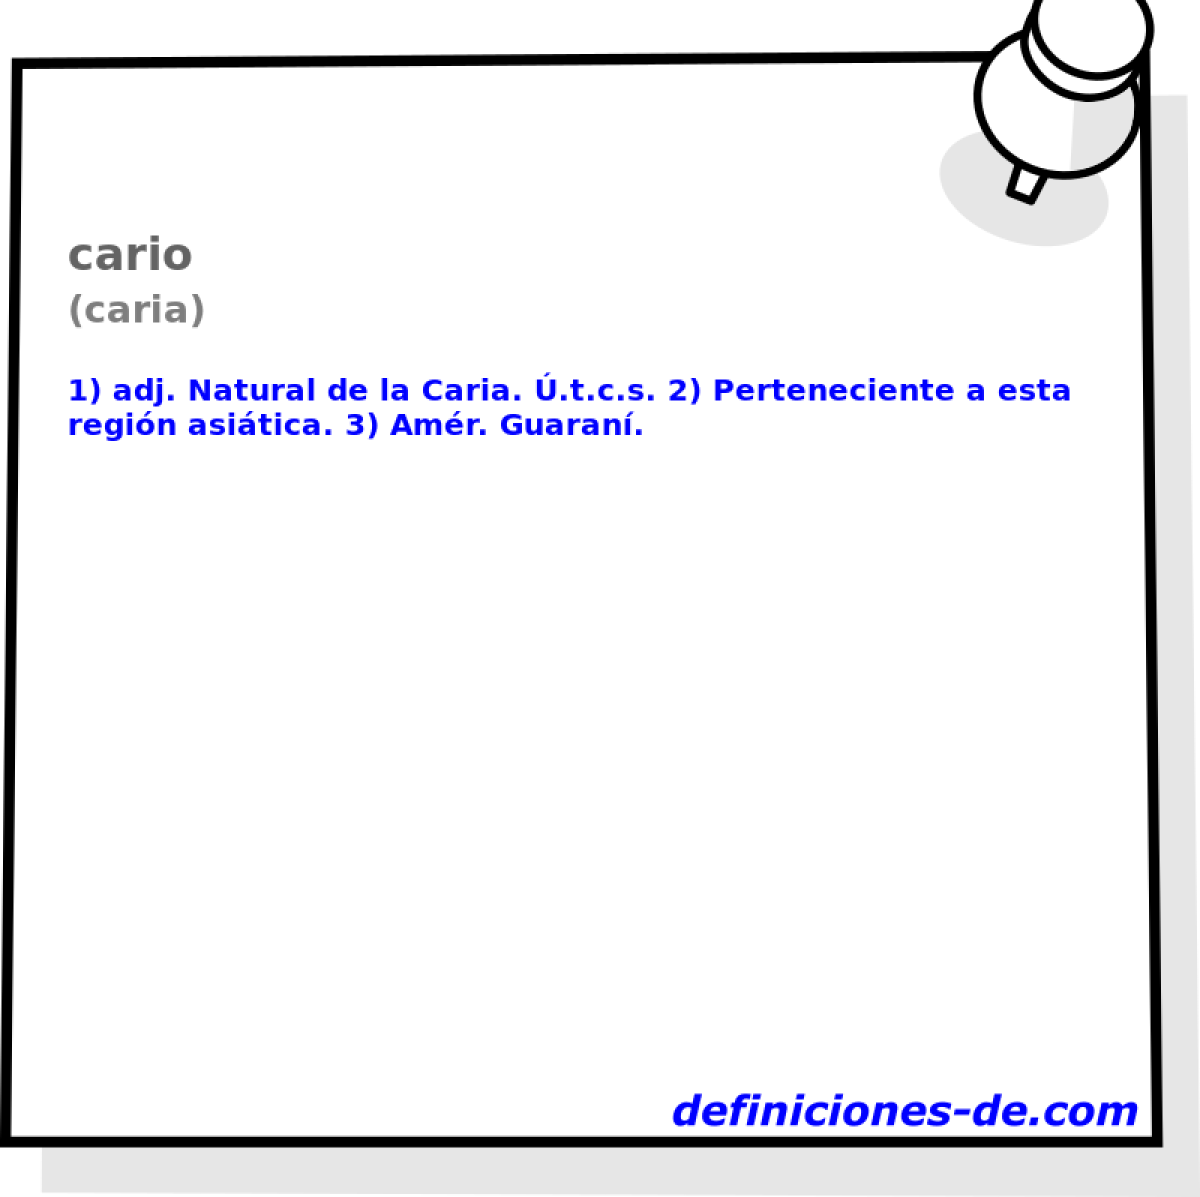 cario (caria)